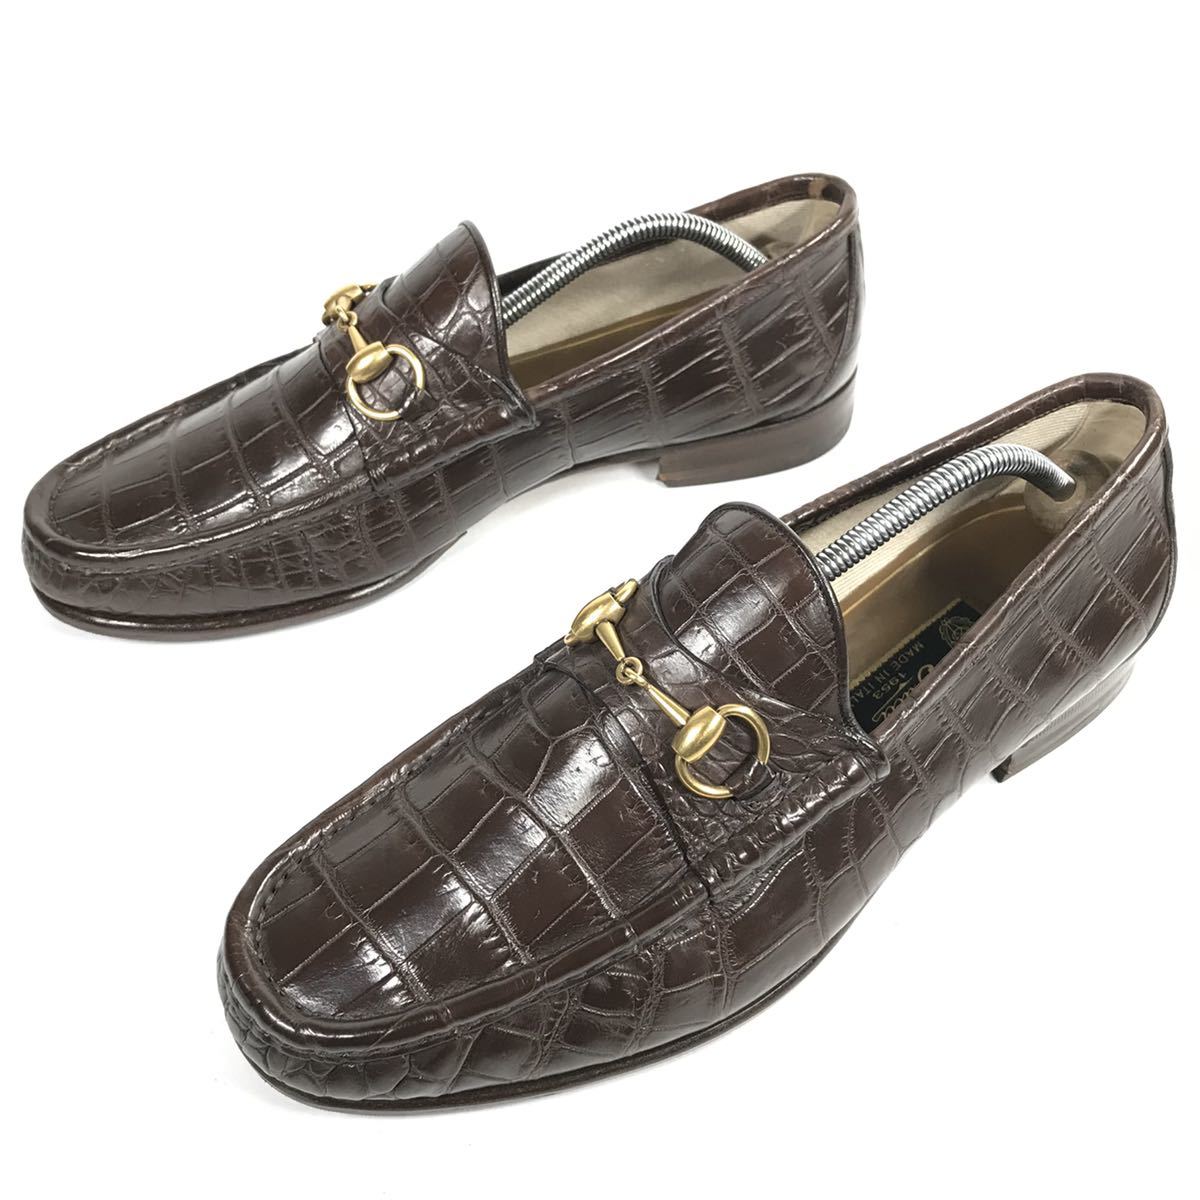 [ Gucci ] подлинный товар GUCCI обувь 28cm чай общий крокодил шланг bit bit Loafer бизнес обувь wani кожа мужской мужской Италия производства 9